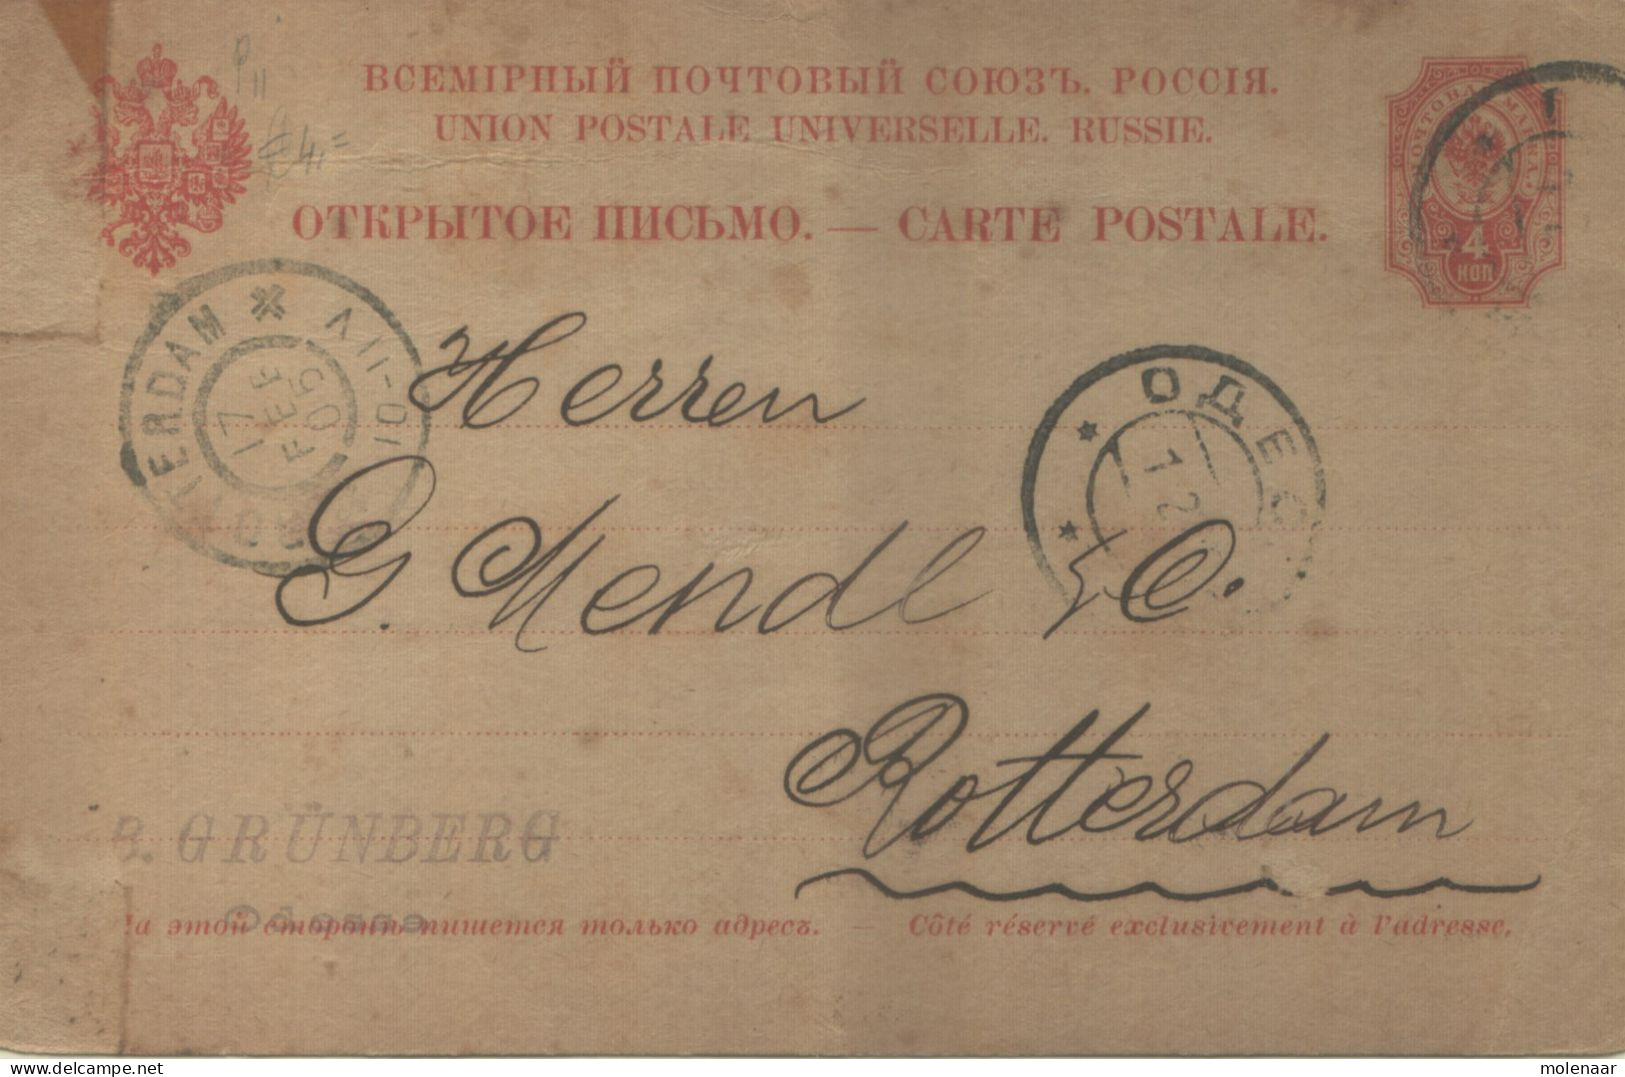 Postzegels > Europa > Rusland En USSR > 1857-1916 Keizerrijk > Briefkaart Uit 1905 (16787) - Ganzsachen